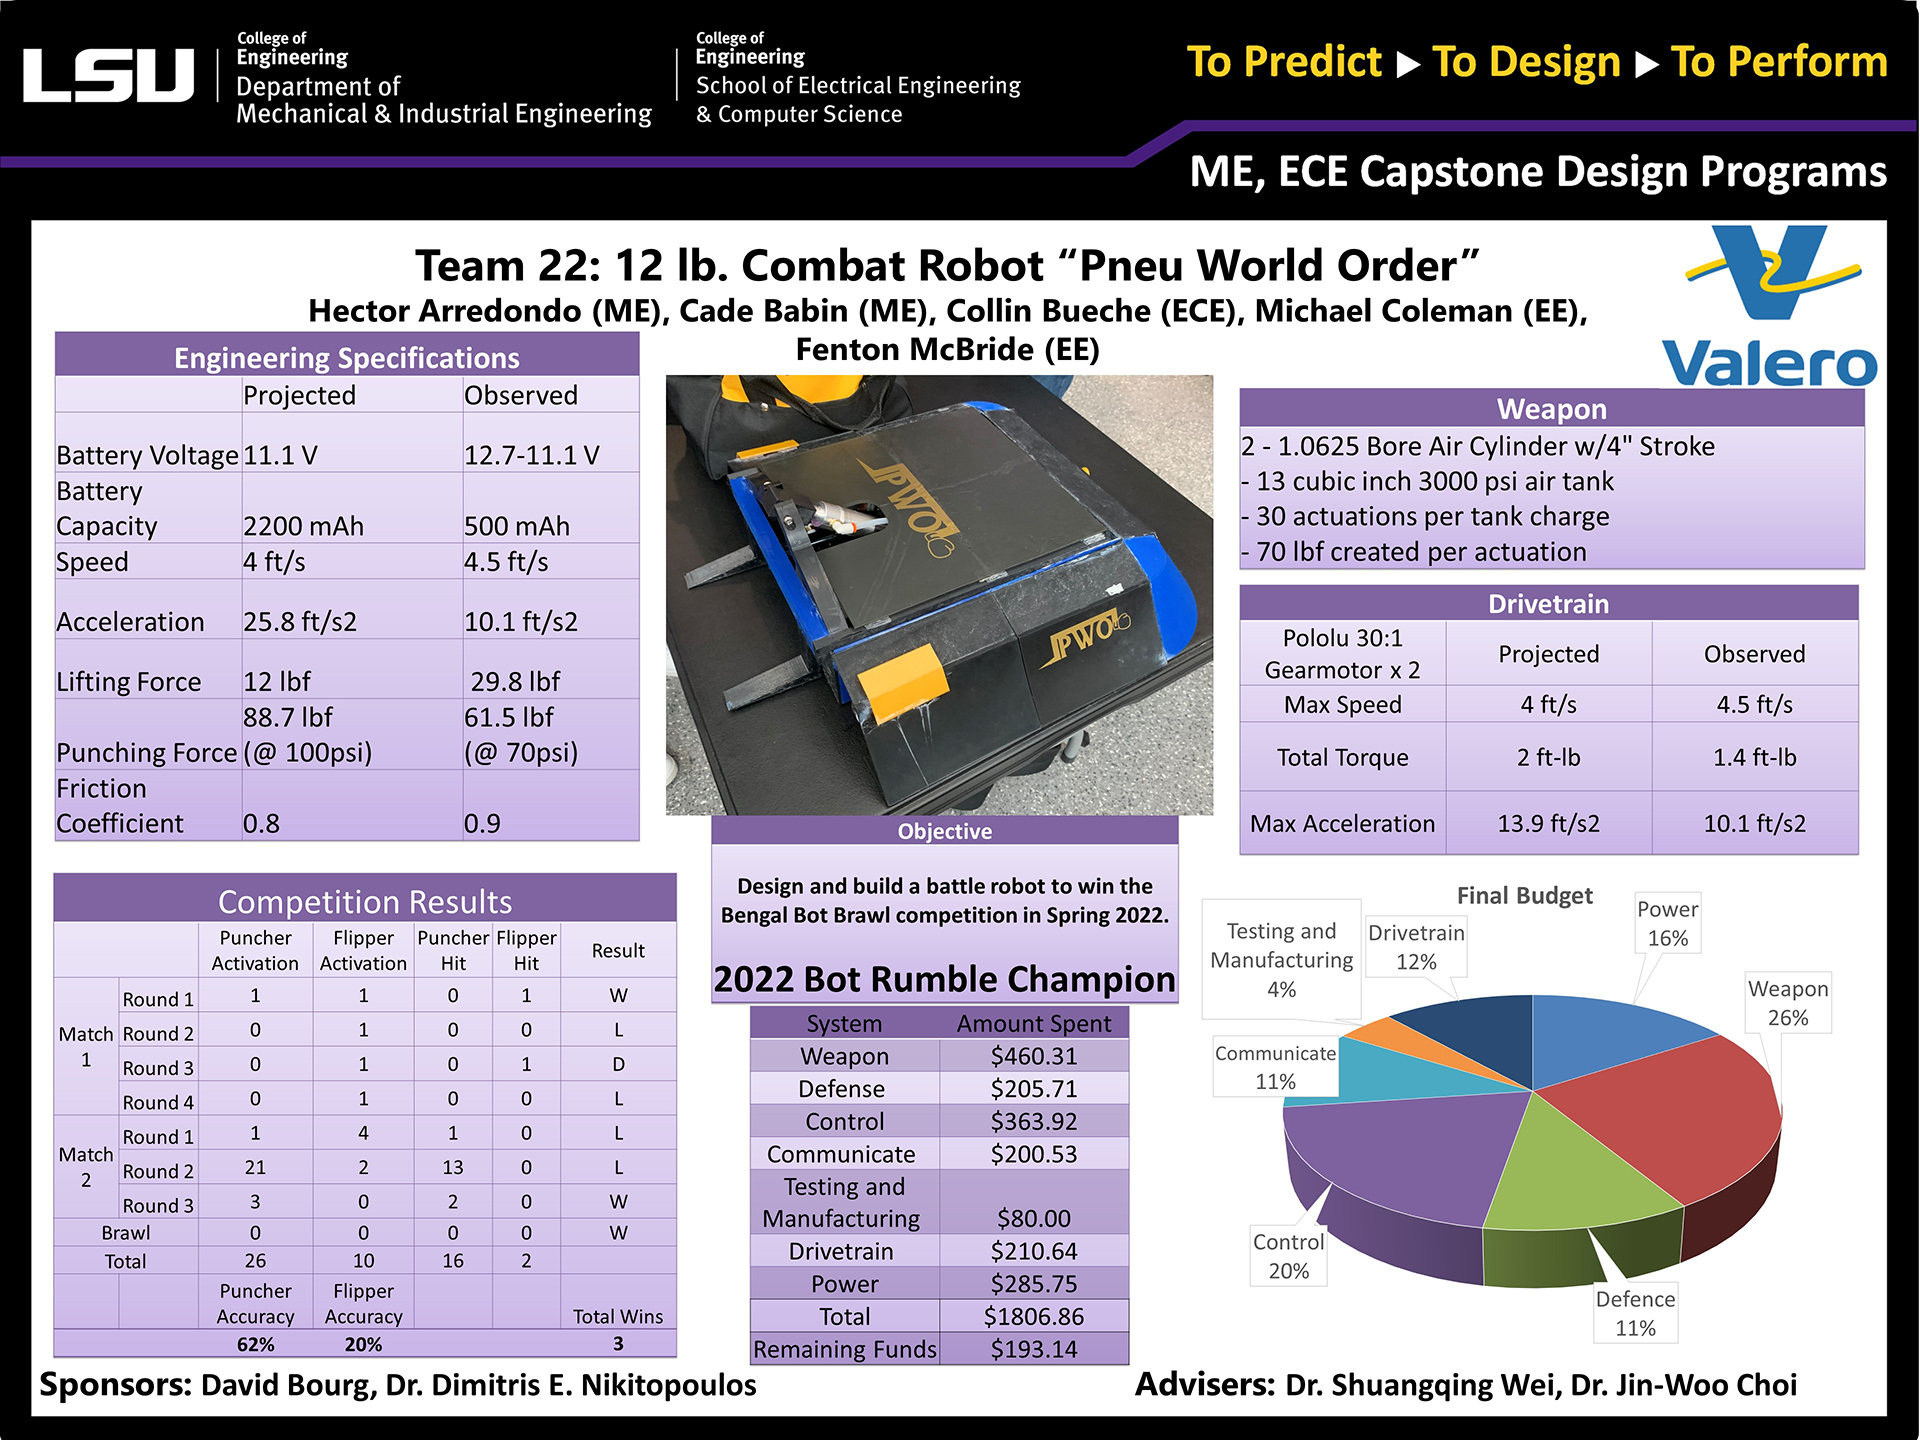 Project 22: 12lb Combat Robot “Pneu World Order” (2022)